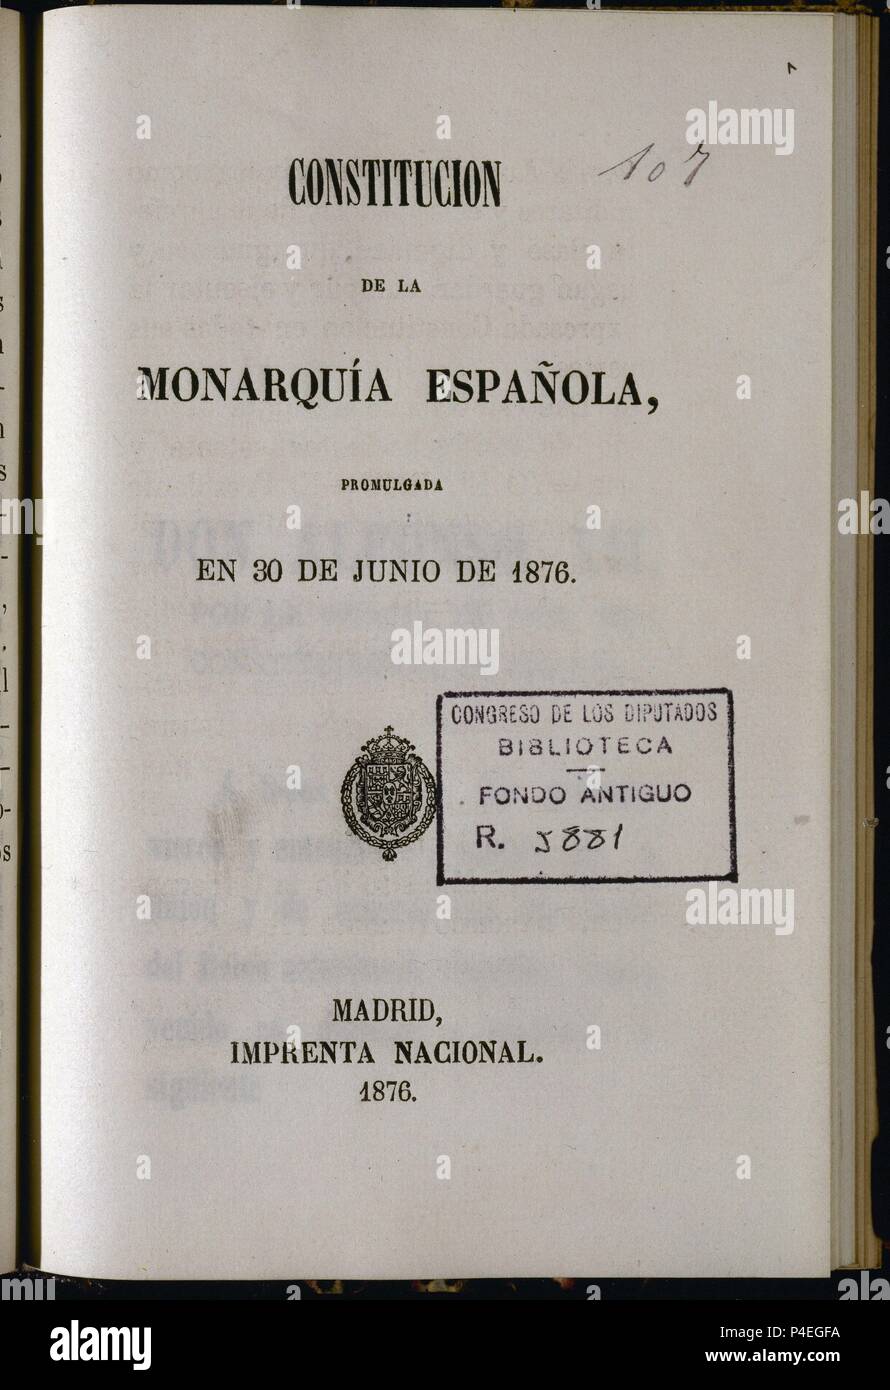 CONSTITUCION ESPAÑOLA DE 1876-PORTADA-IMPRESA EL 30/6/1876. Location: CONGRESO DE LOS DIPUTADOS-BIBLIOTECA, MADRID, SPAIN. Stock Photo